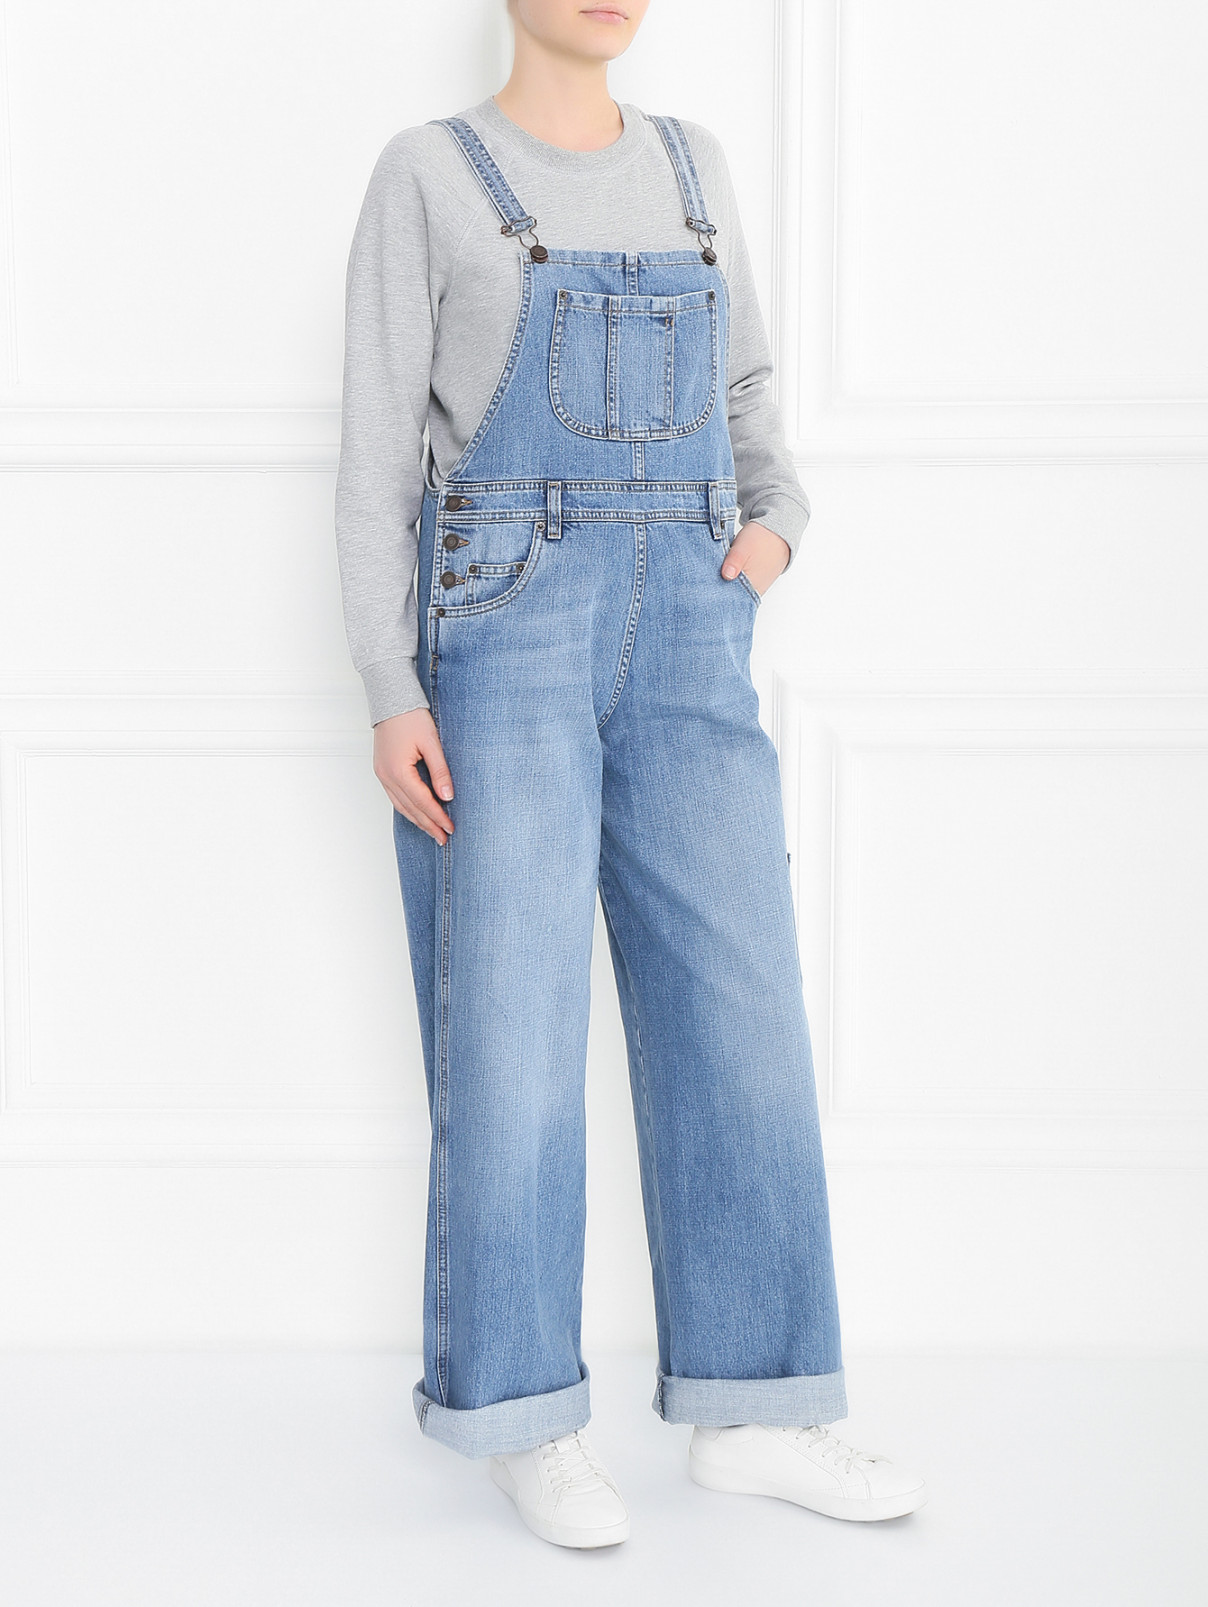 Джинсовый комбинезон с широкими брюками Moschino Couture  –  Модель Общий вид  – Цвет:  Синий